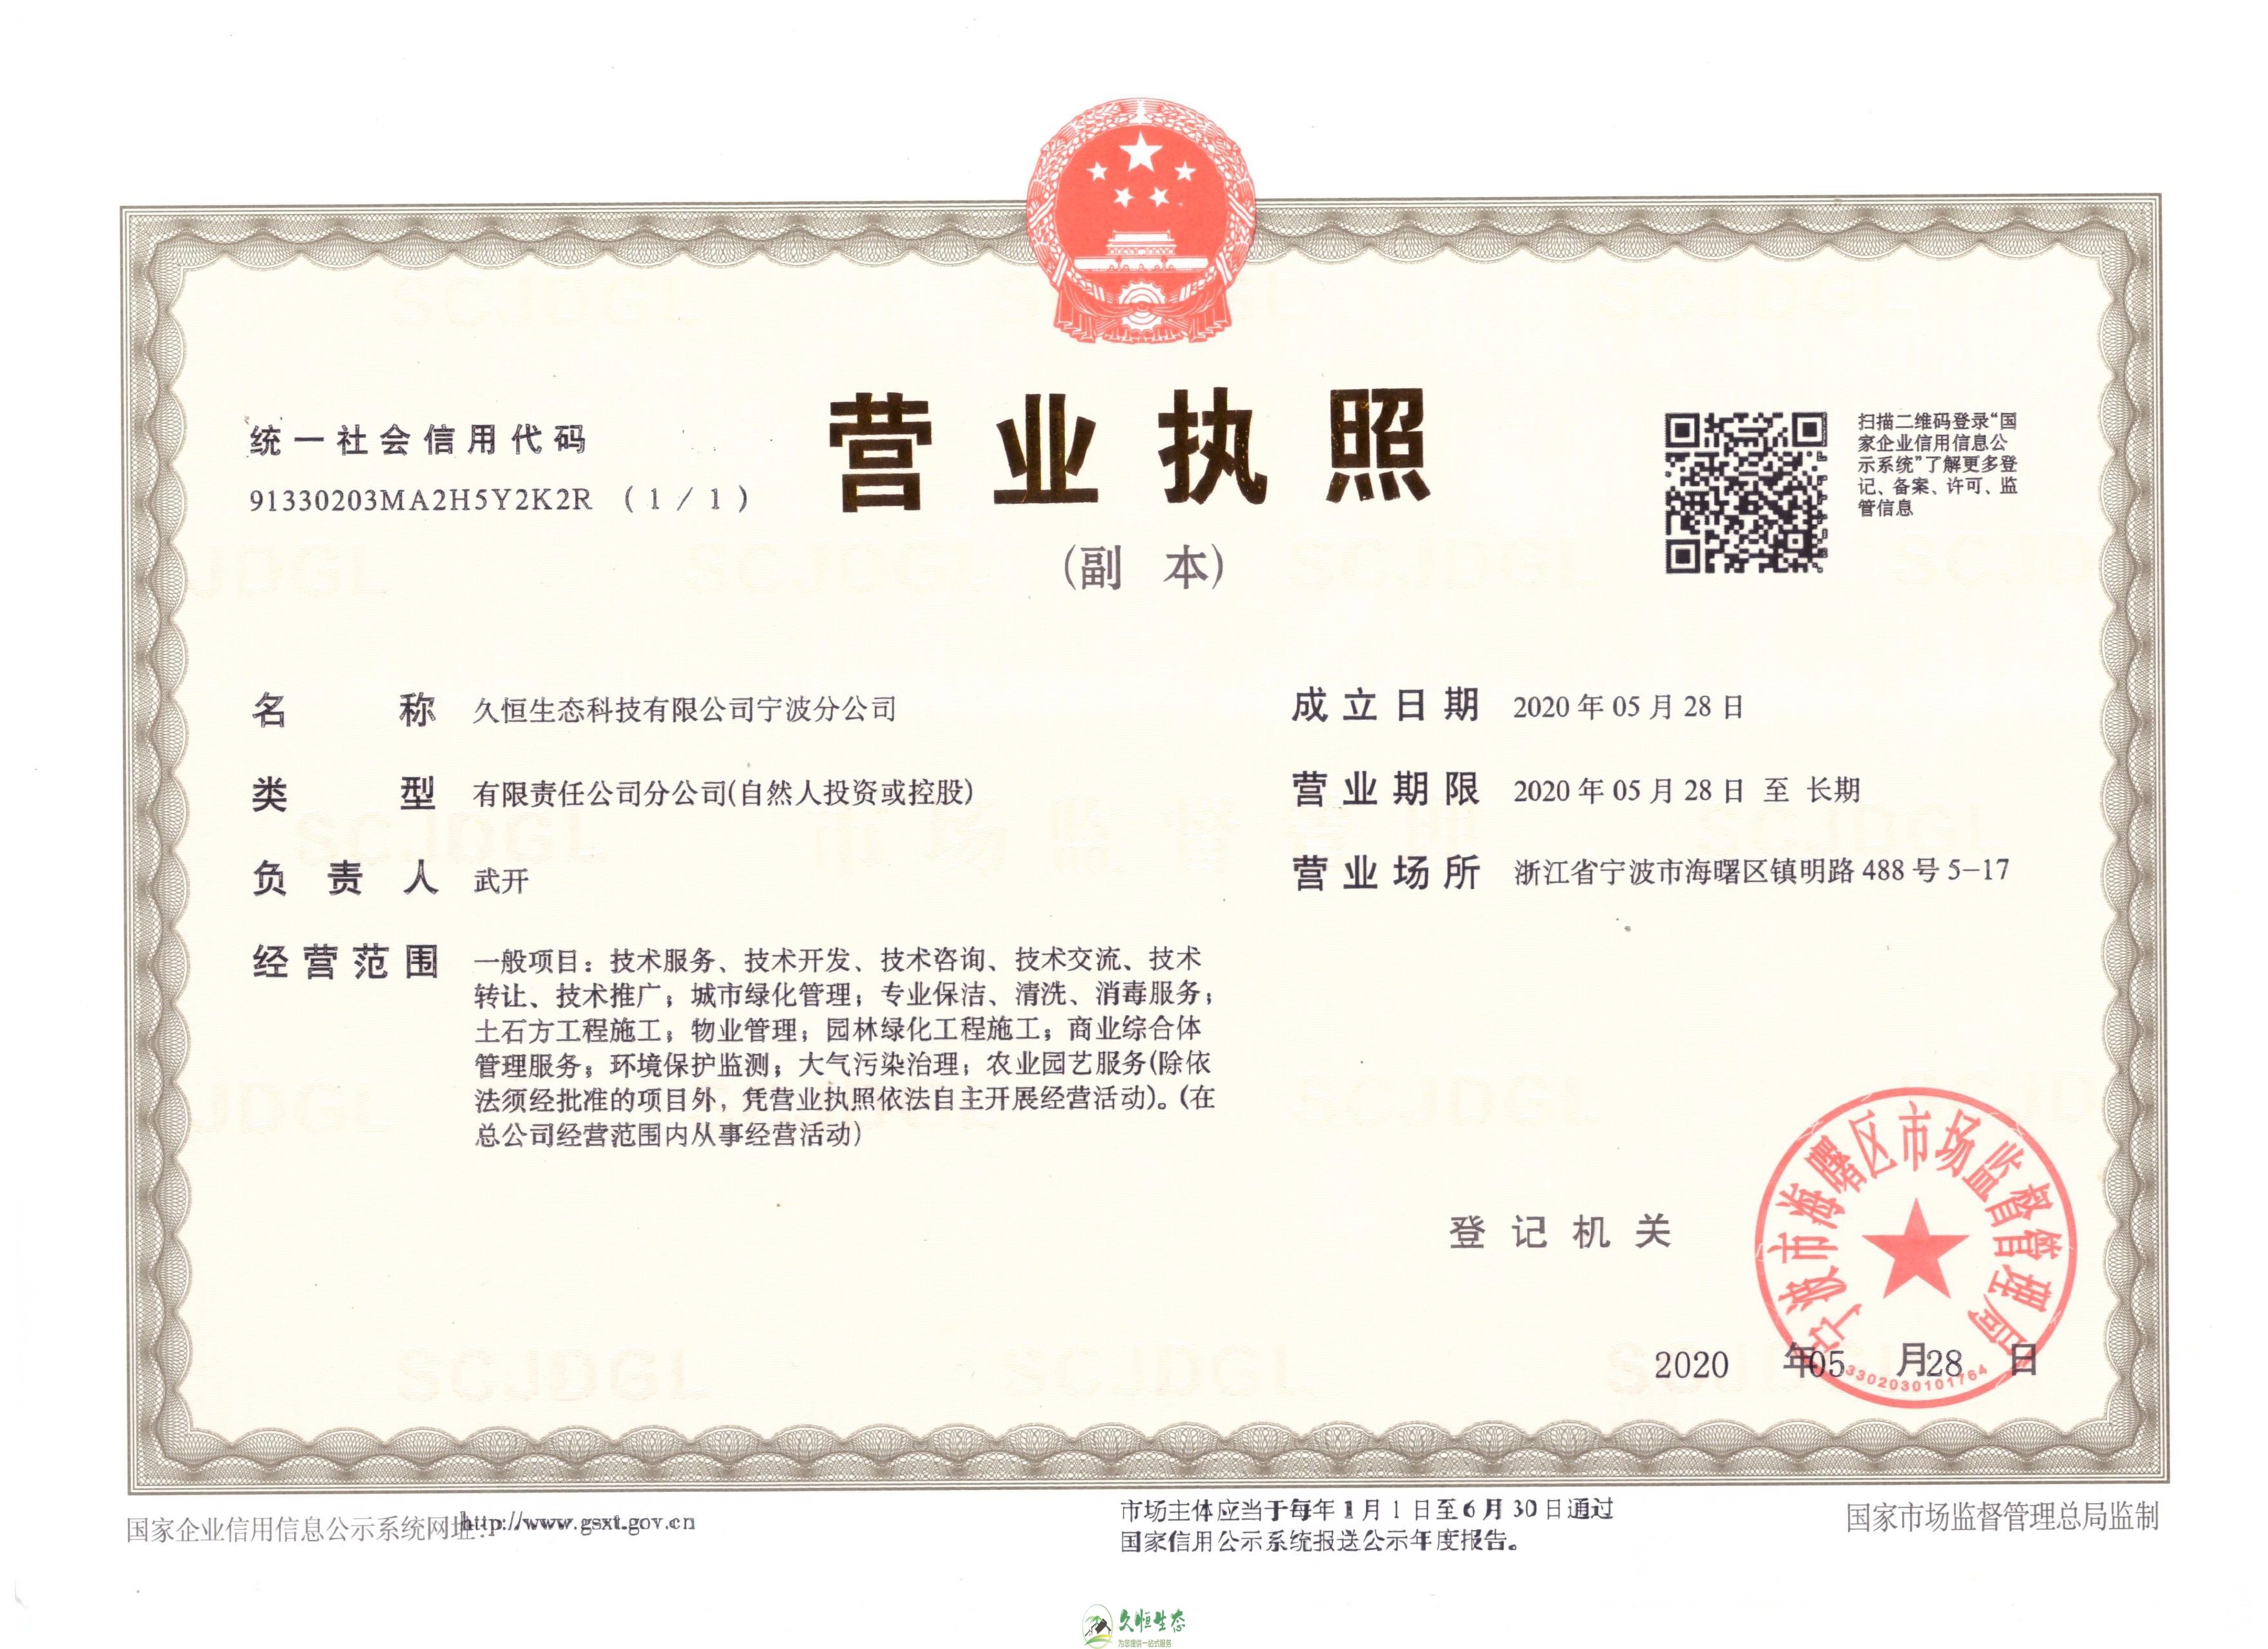 武昌久恒生态宁波分公司2020年5月28日成立